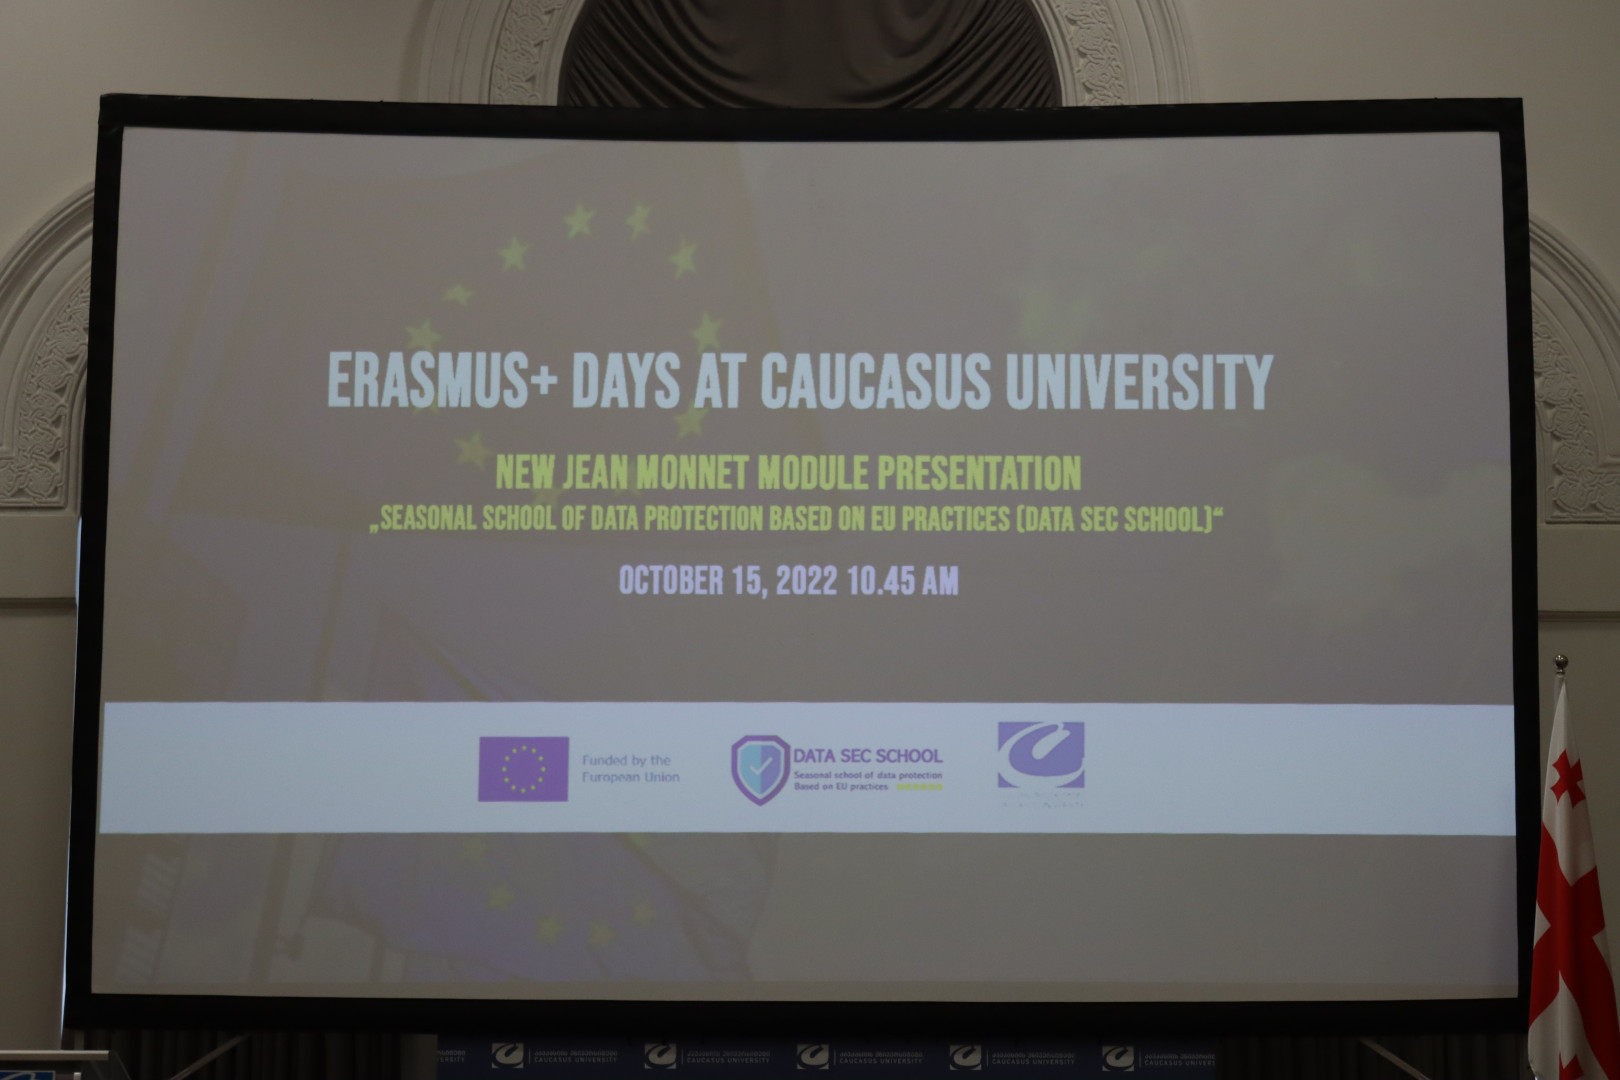 ERASMUS+ დღეები კავკასიის უნივერსიტეტში, ახალი ჟან მონეს მოდულის პრეზენტაცია